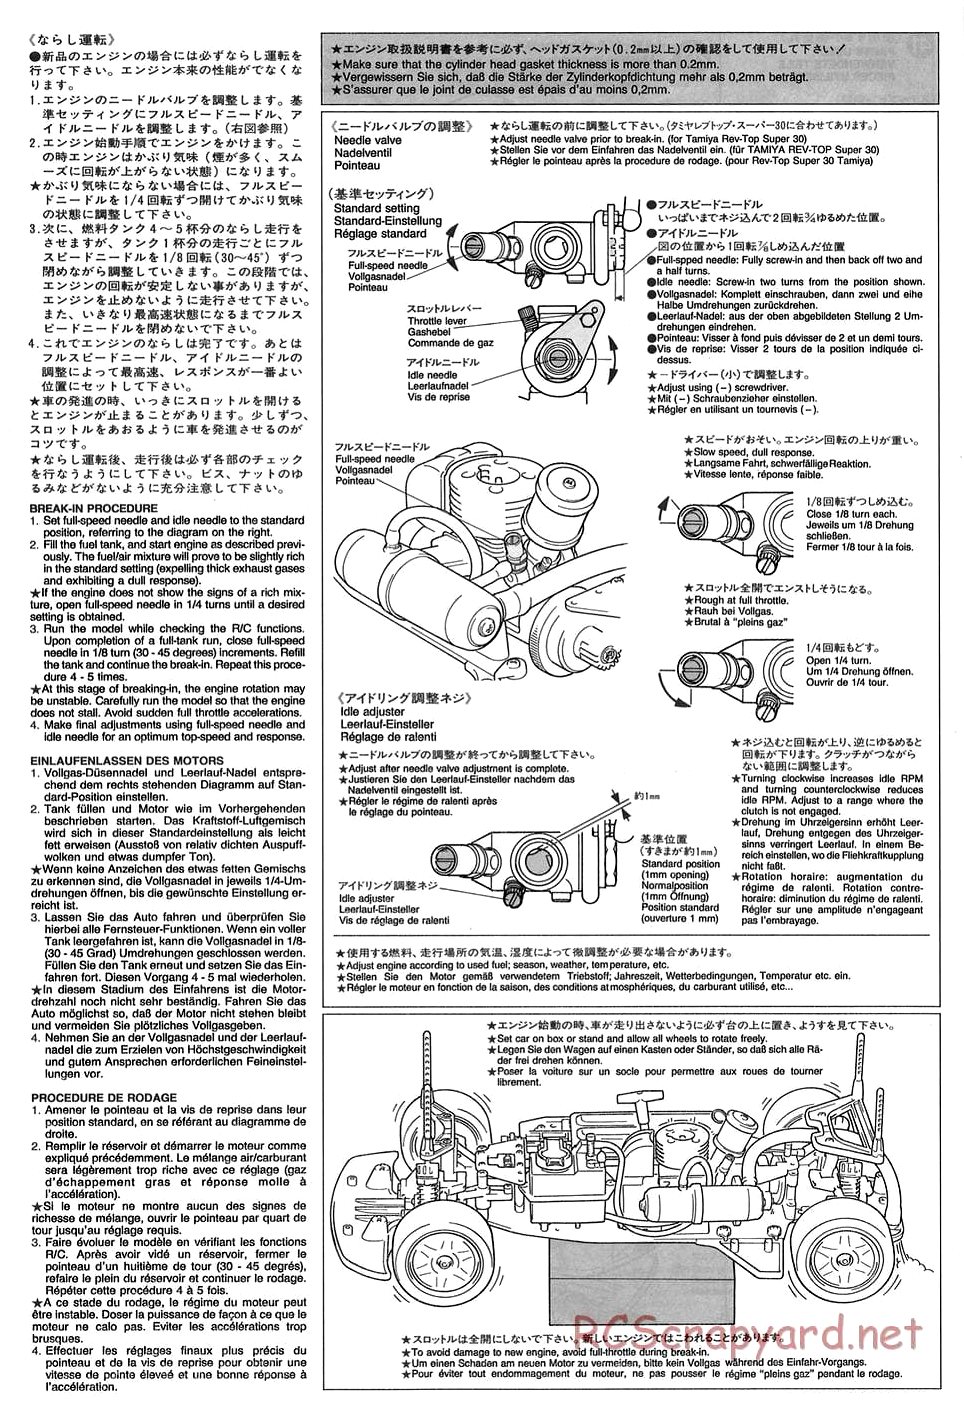 Tamiya - TGX Mk.1 Chassis - Manual - Page 19